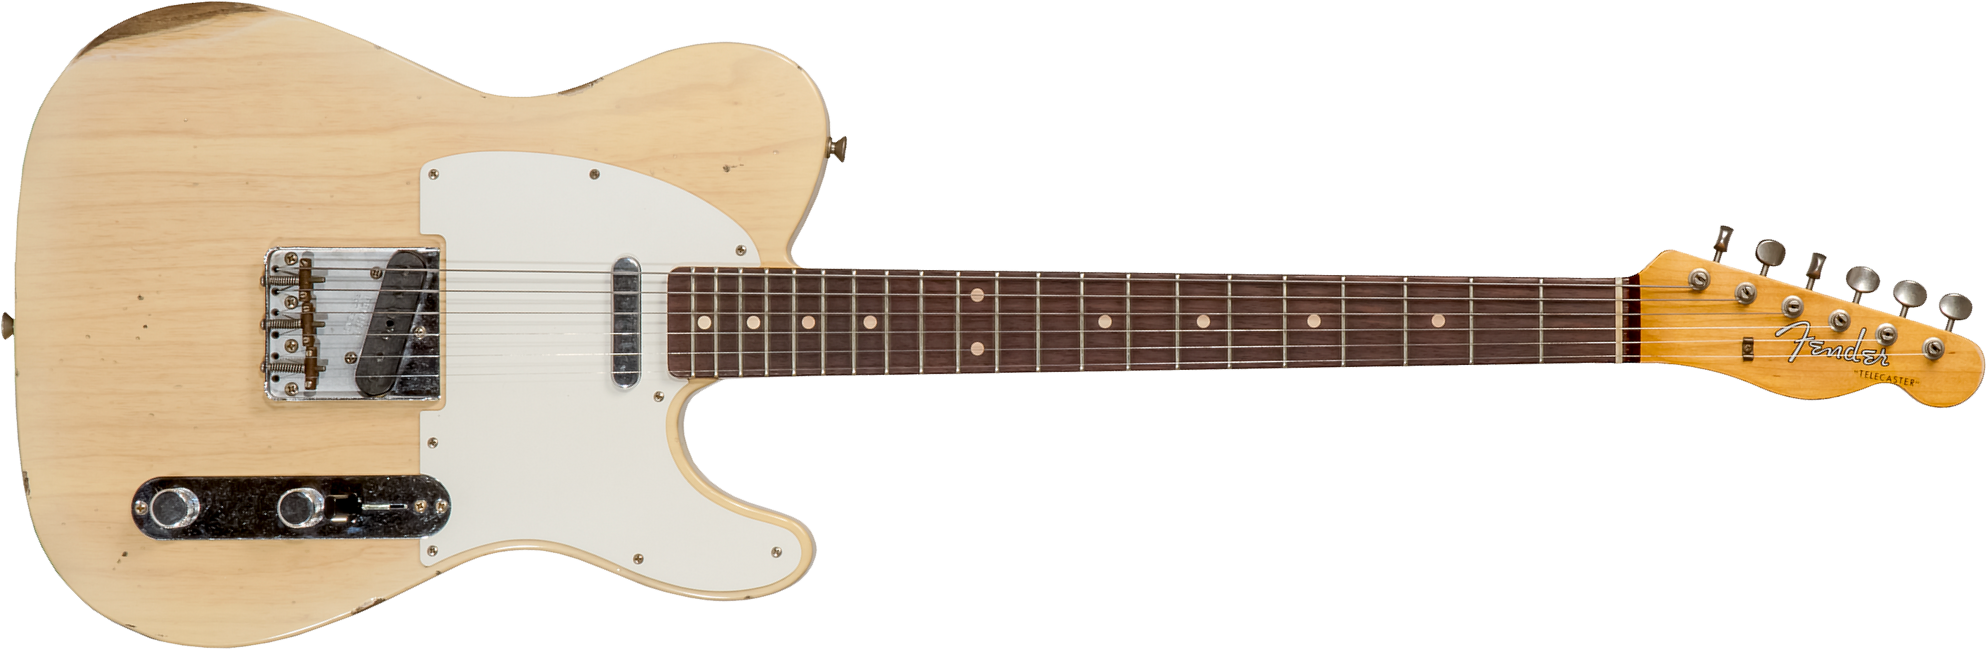 Fender Custom Shop Tele 1960 2s Ht Rw #cz569492 - Relic Natural Blonde - Guitare Électrique Forme Tel - Main picture